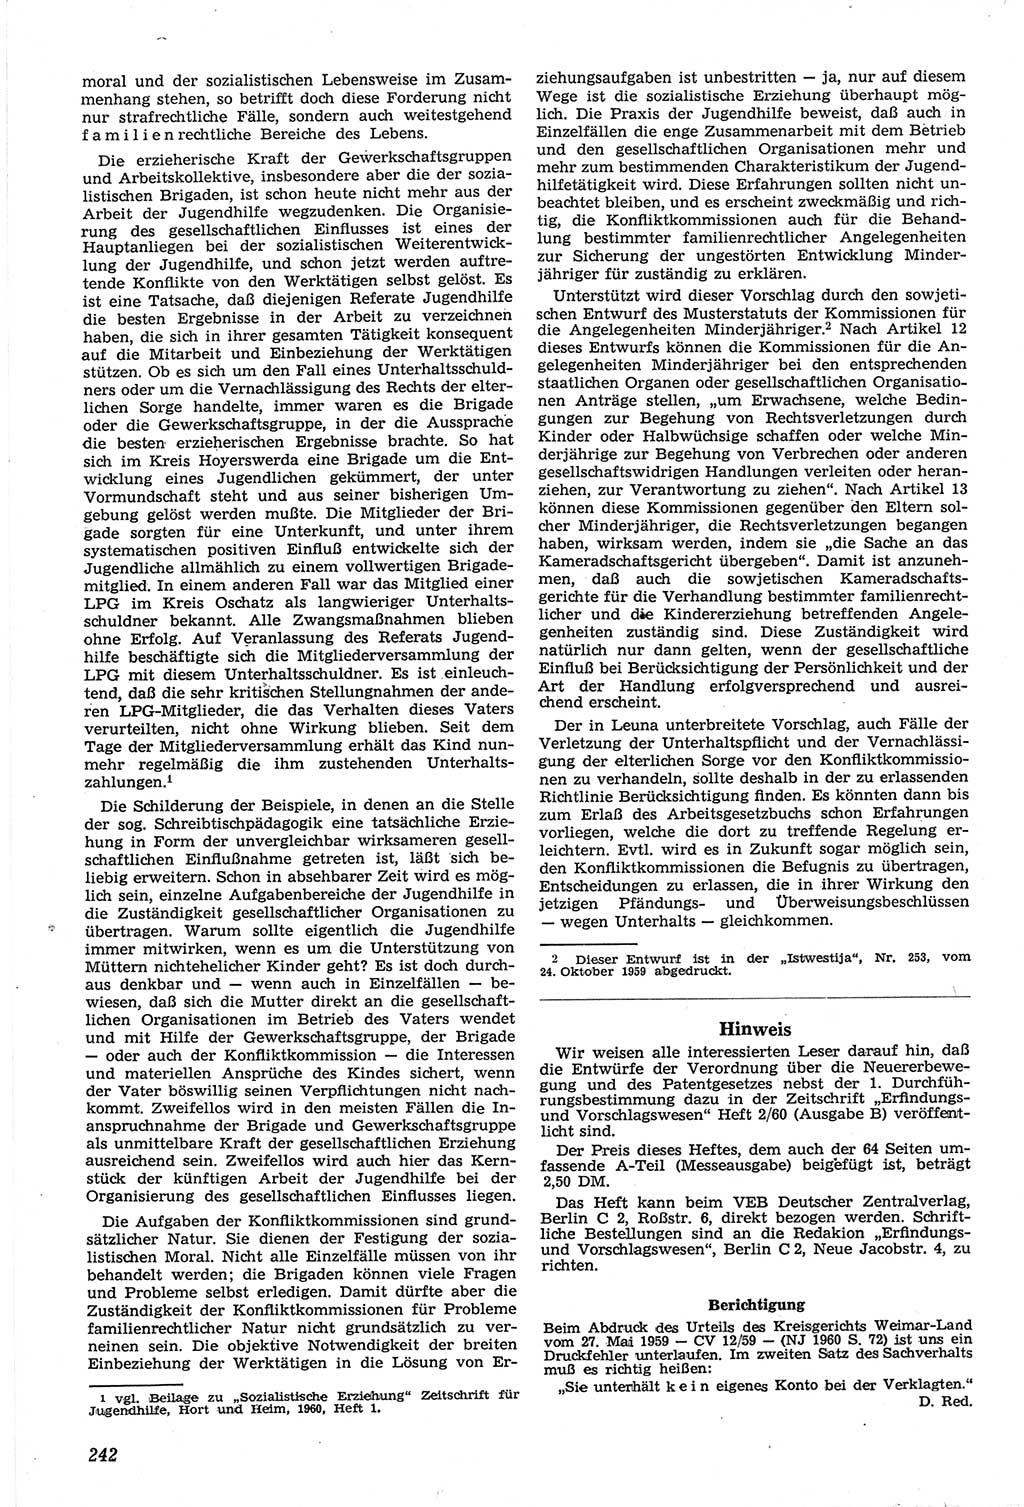 Neue Justiz (NJ), Zeitschrift für Recht und Rechtswissenschaft [Deutsche Demokratische Republik (DDR)], 14. Jahrgang 1960, Seite 242 (NJ DDR 1960, S. 242)